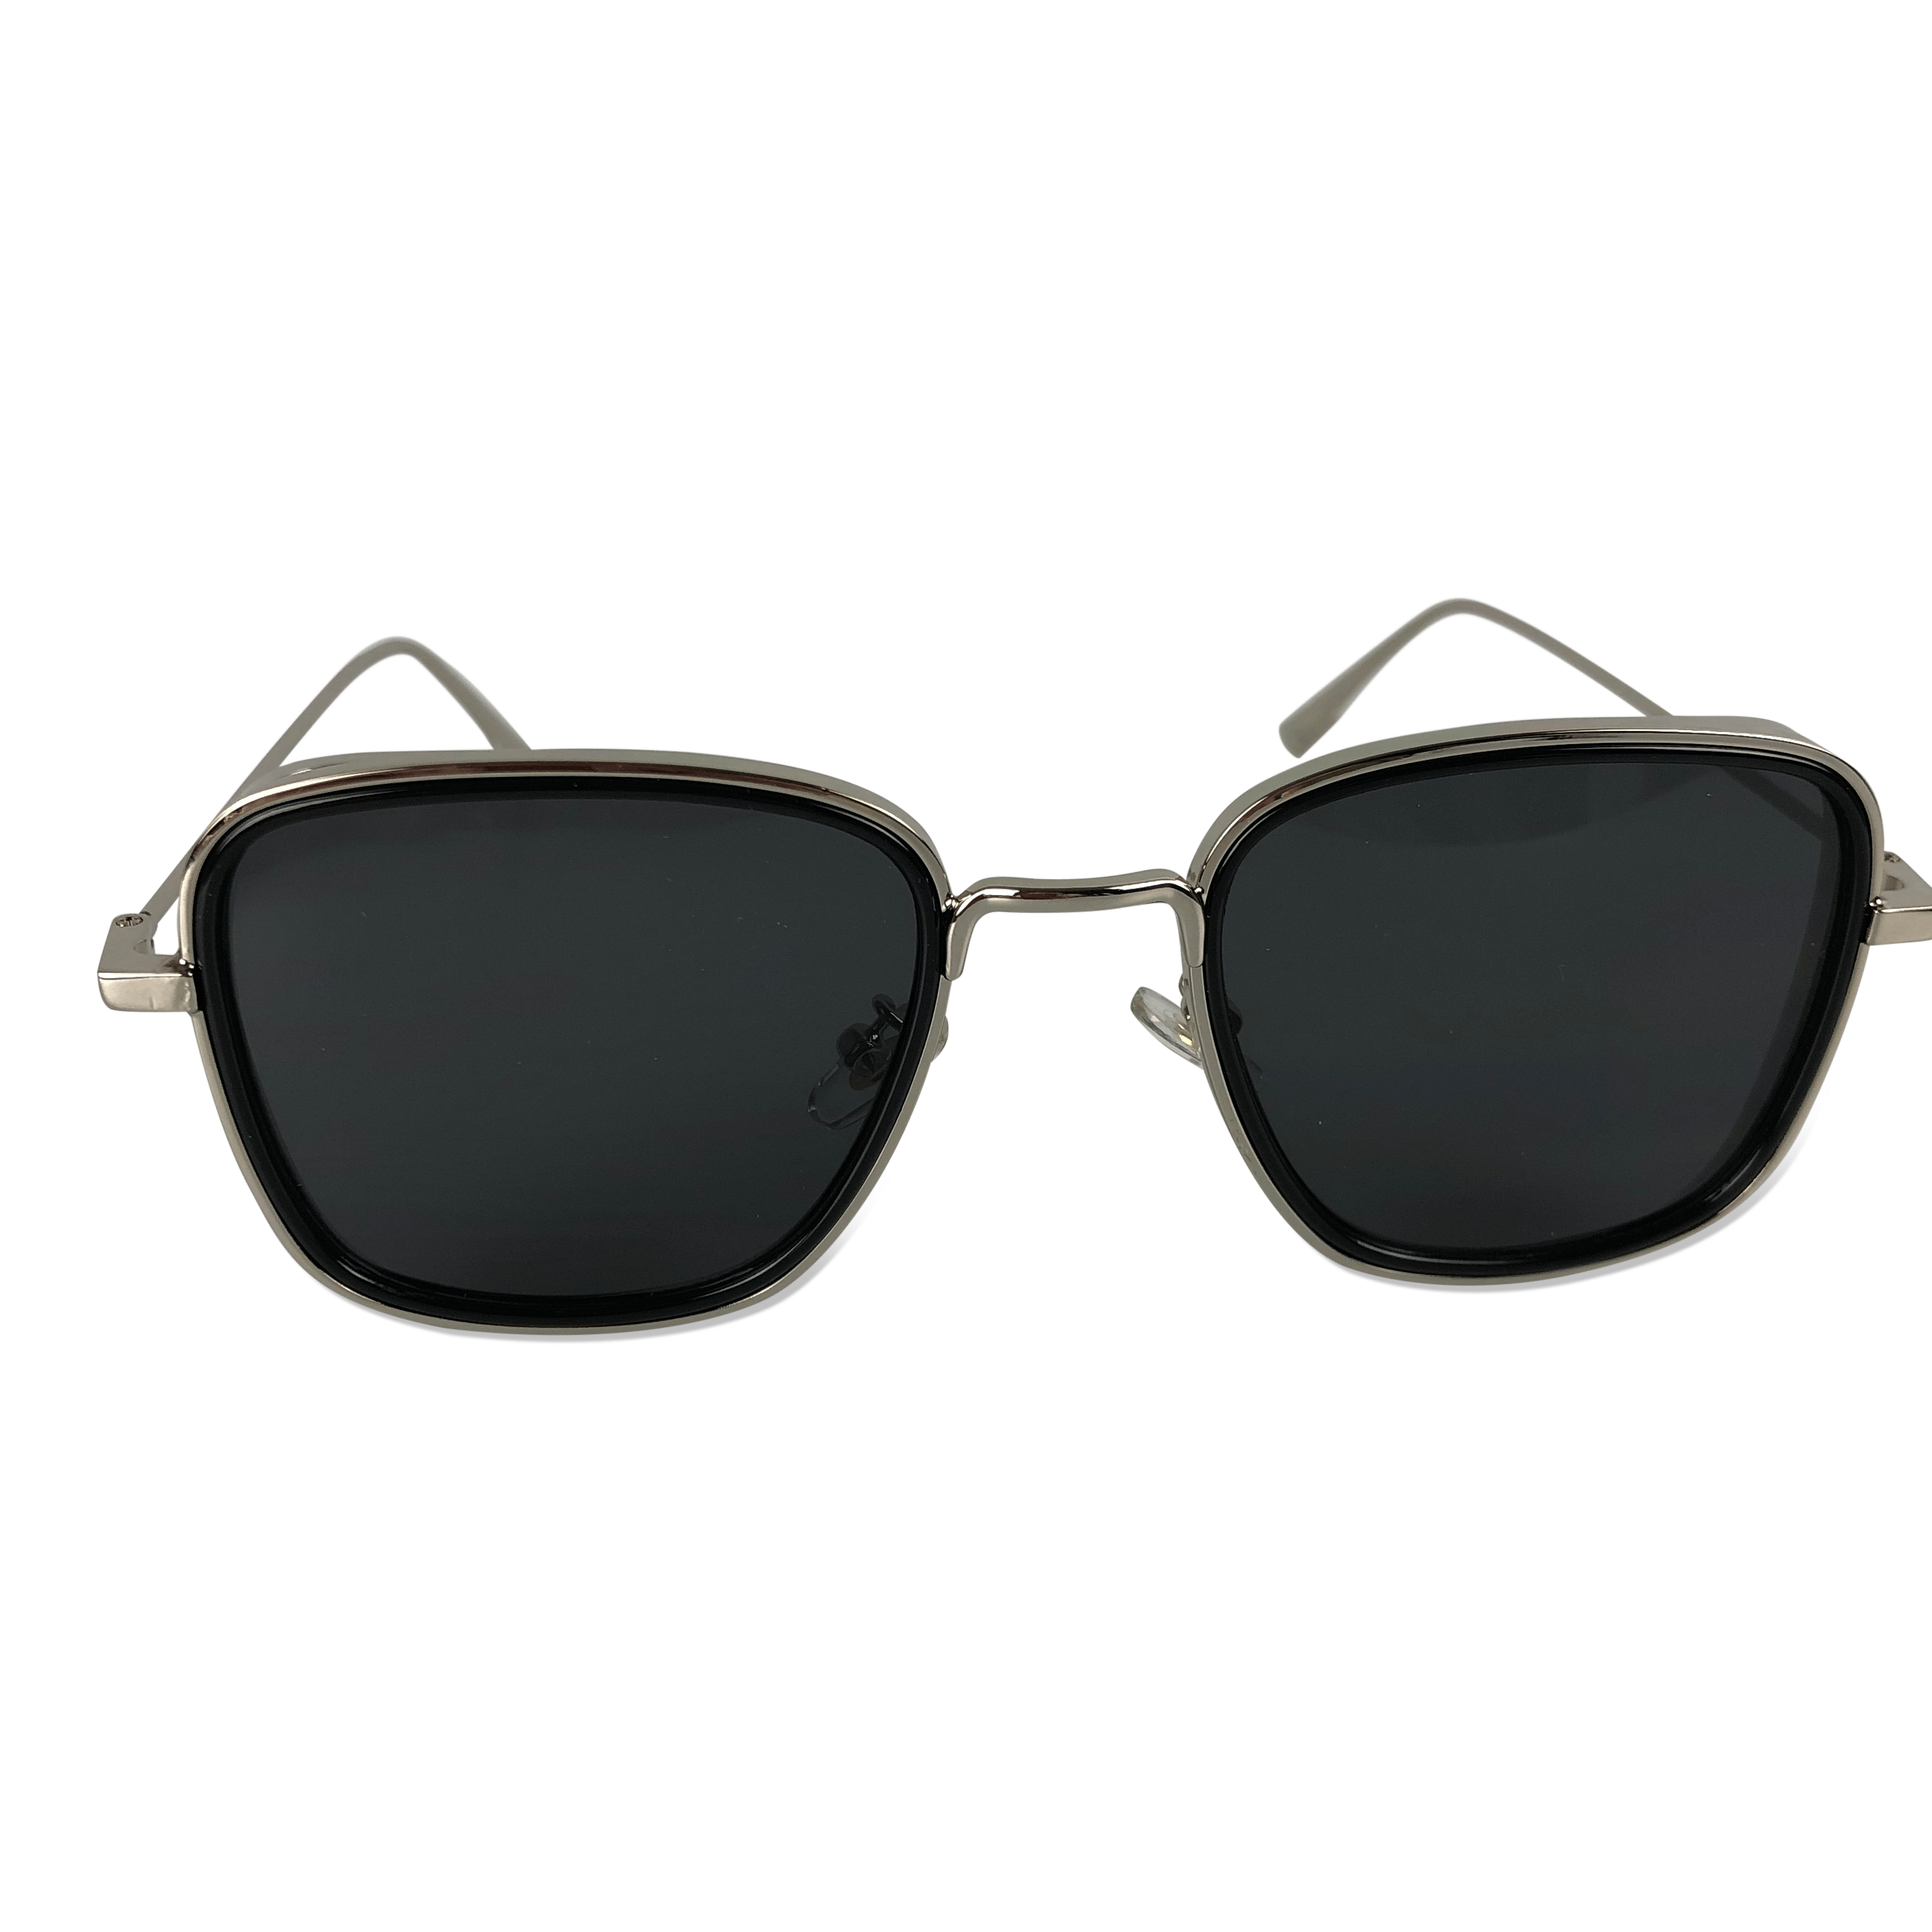 Køb billige solbriller Stort udvalg OtherStuff